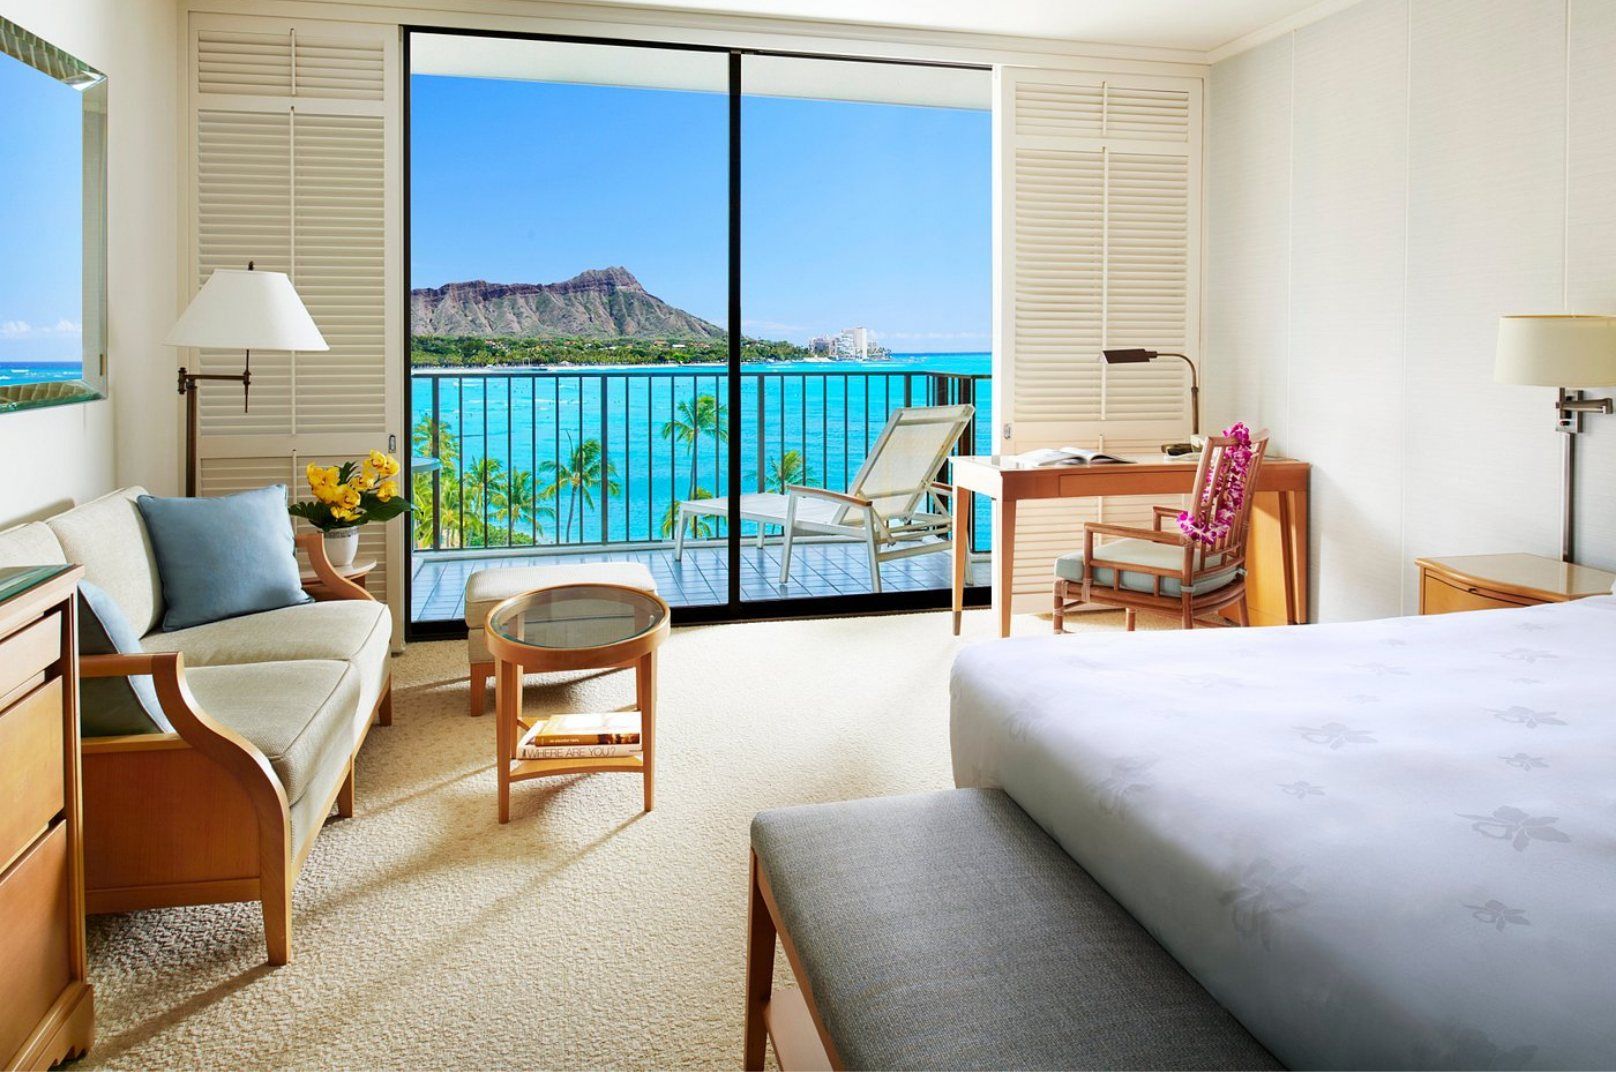 The Best Luxury Hotels in Hawaii